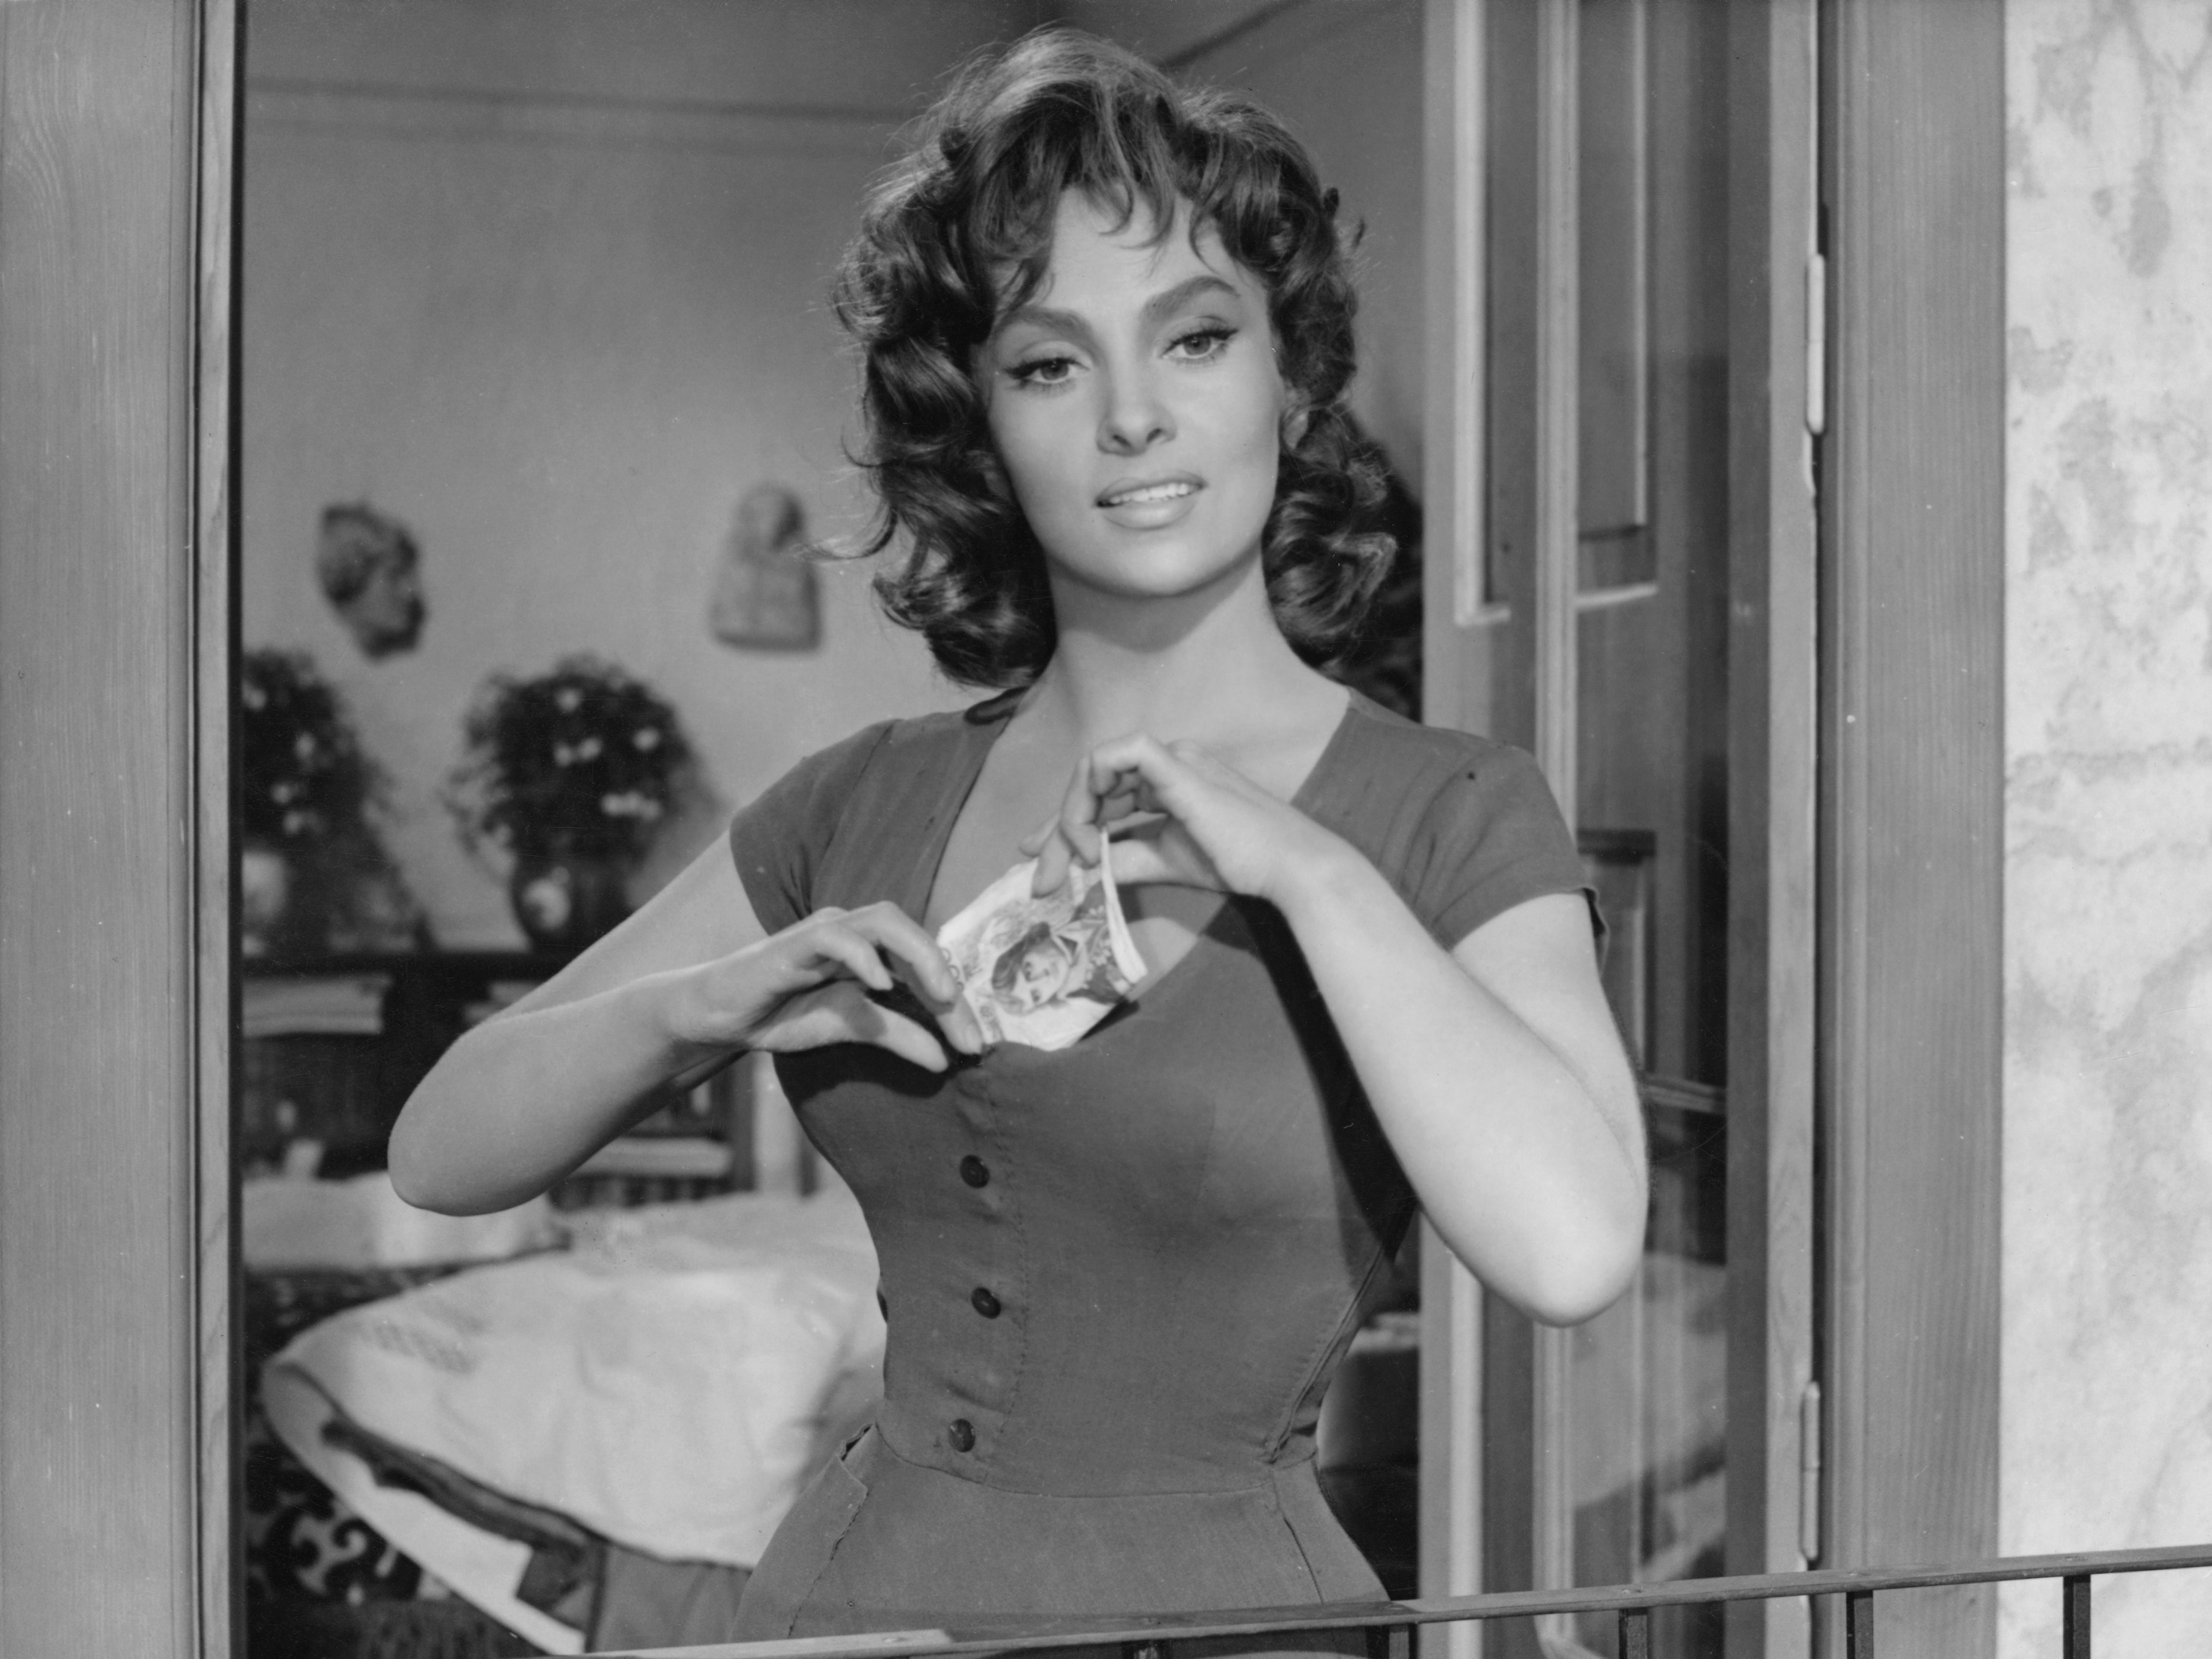 Lollobrigida in the 1959 film ‘La Legge’